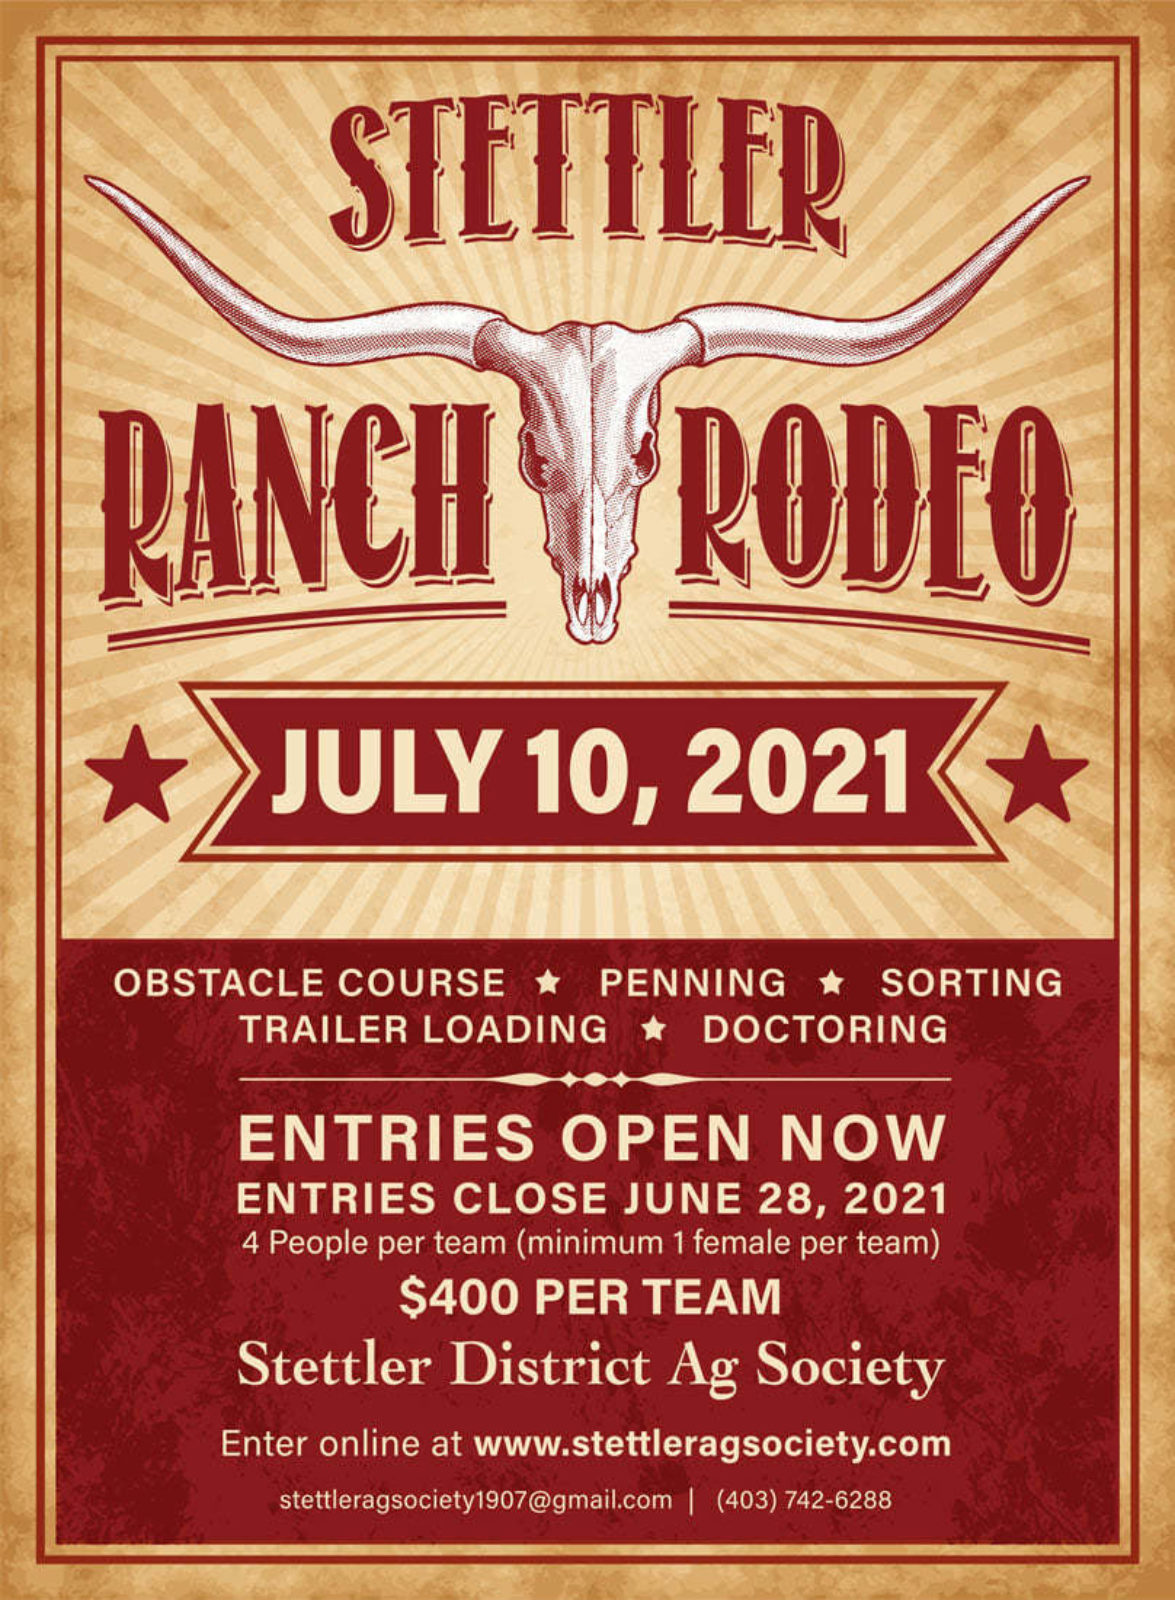 Stettler ranch rodeo